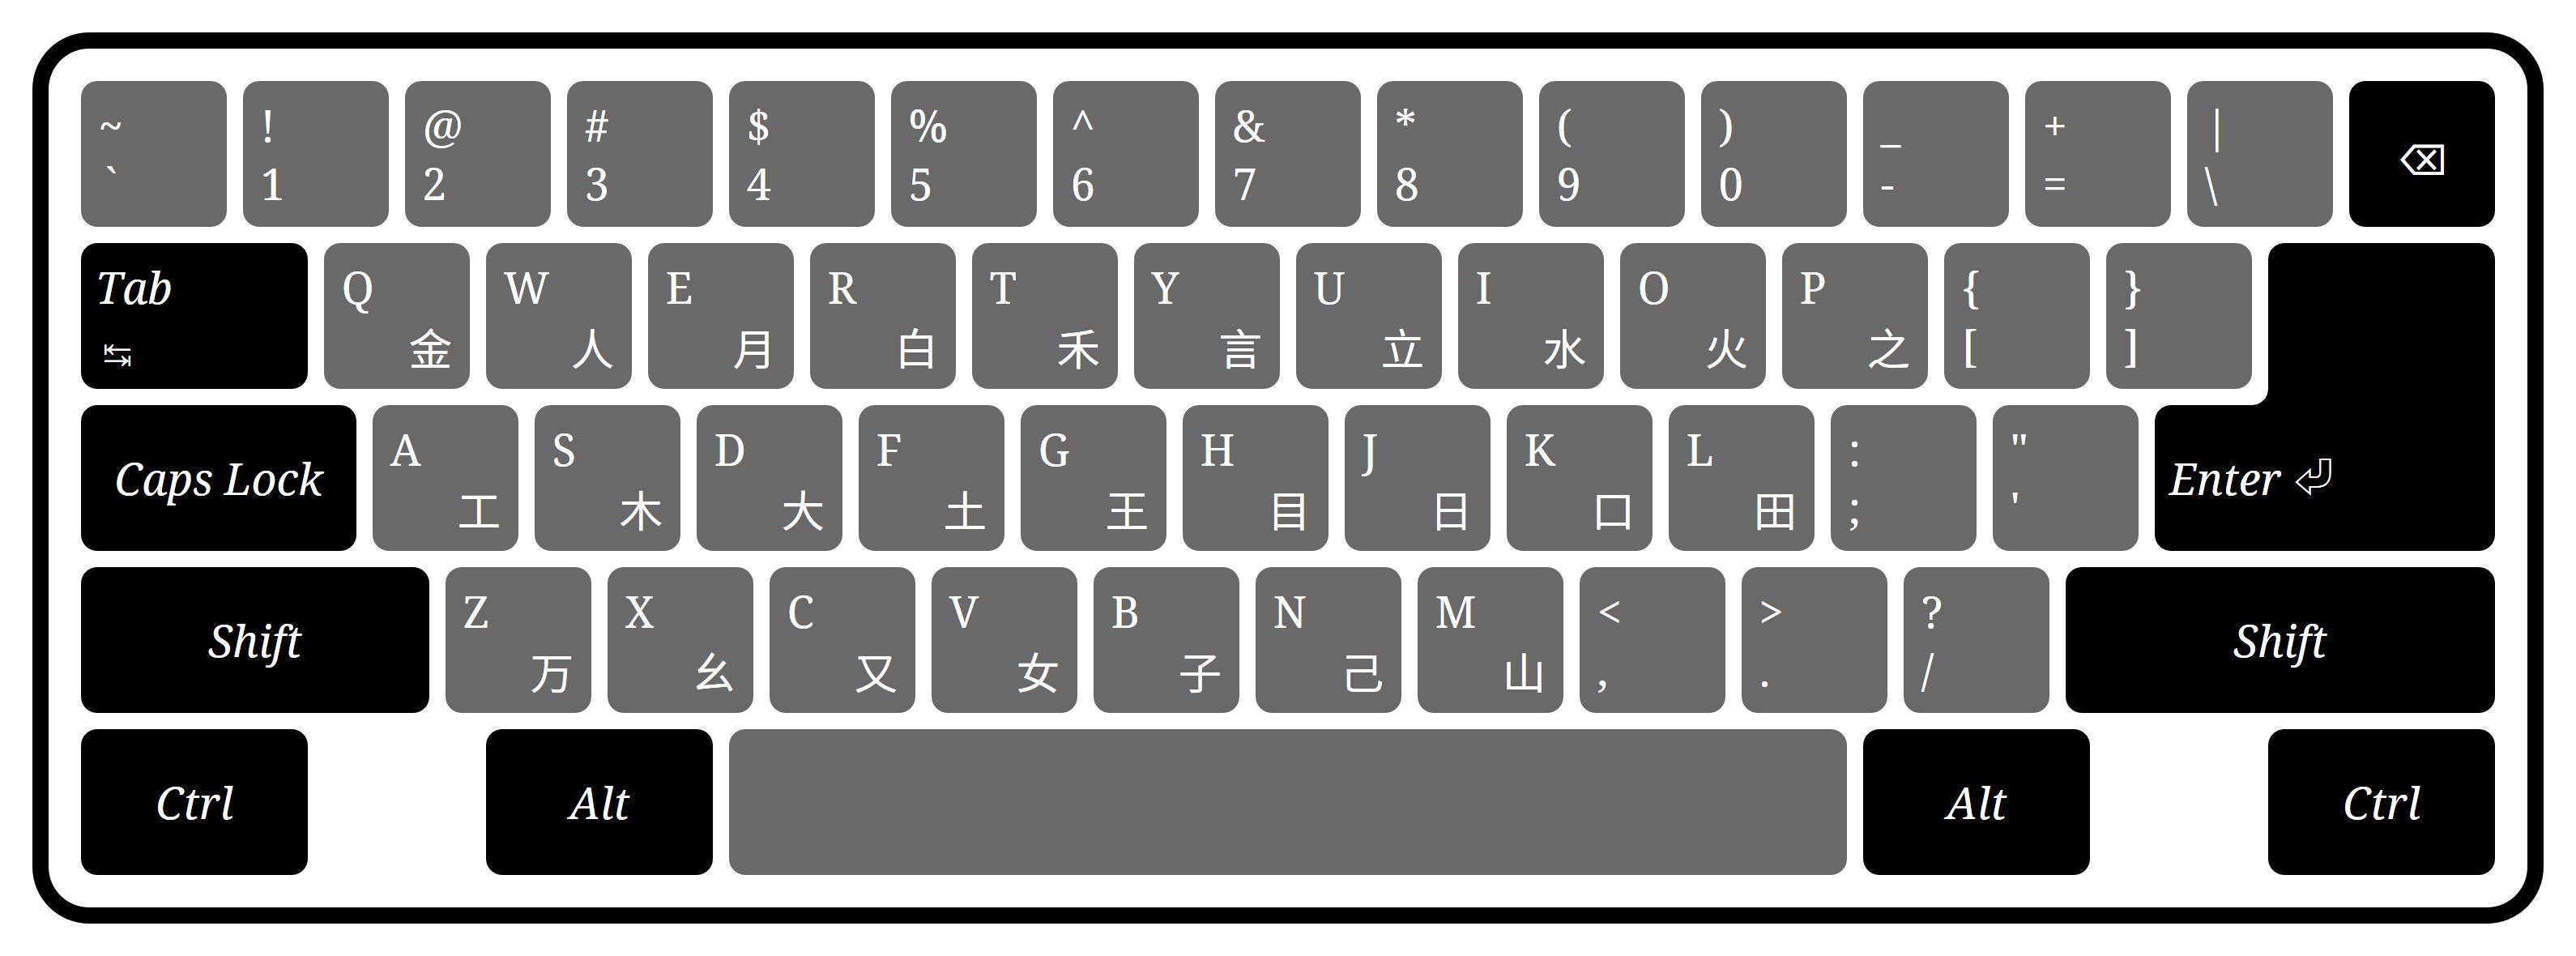 这种回车键呈「⏎」形状的键盘，曾经在中国非常流行。当年，五笔字型也很流行